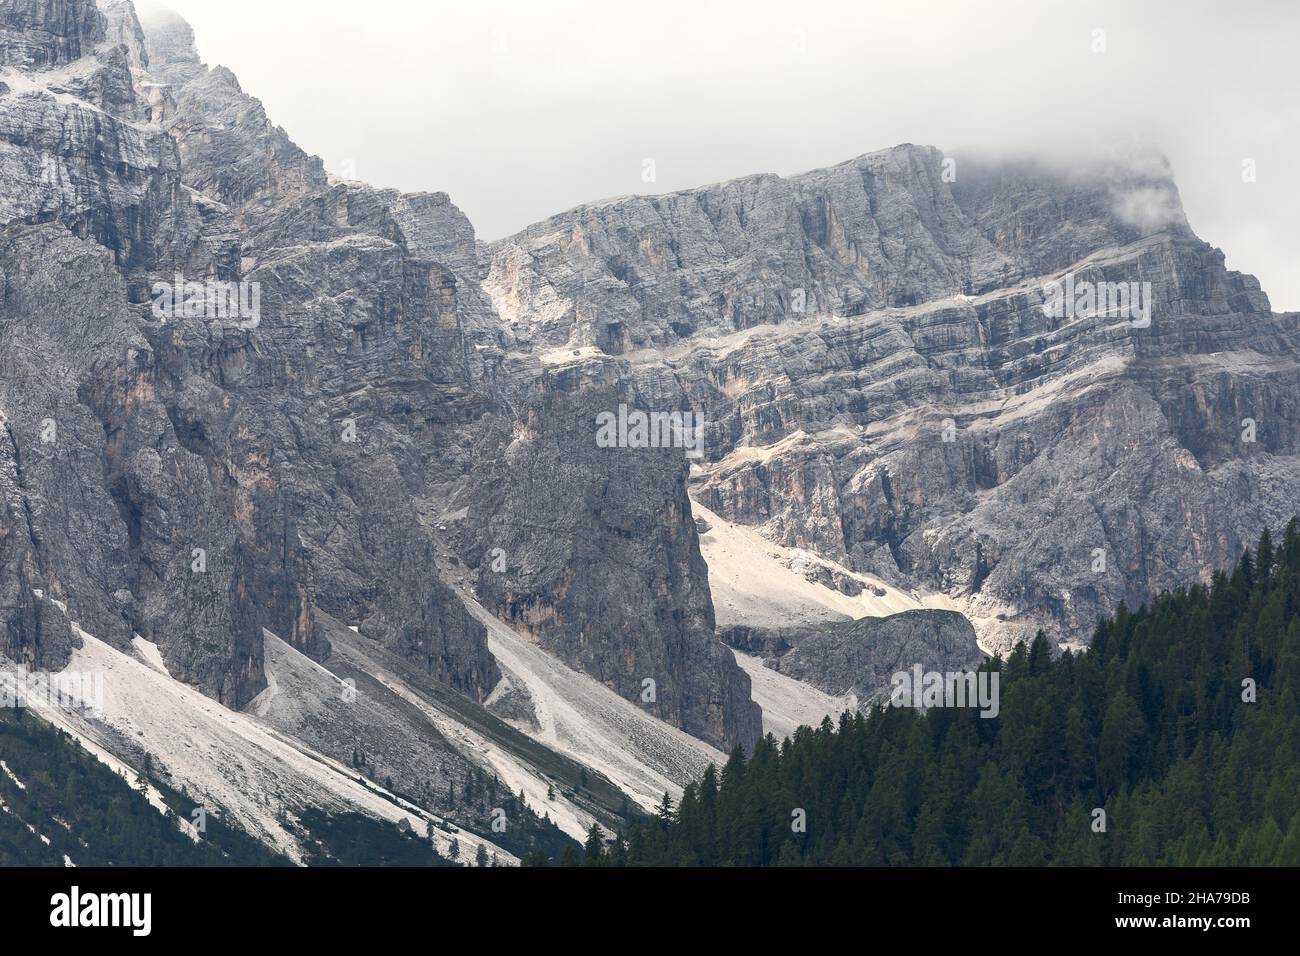 Les Dolomites italiennes sont couvertes de nuages bas Banque D'Images